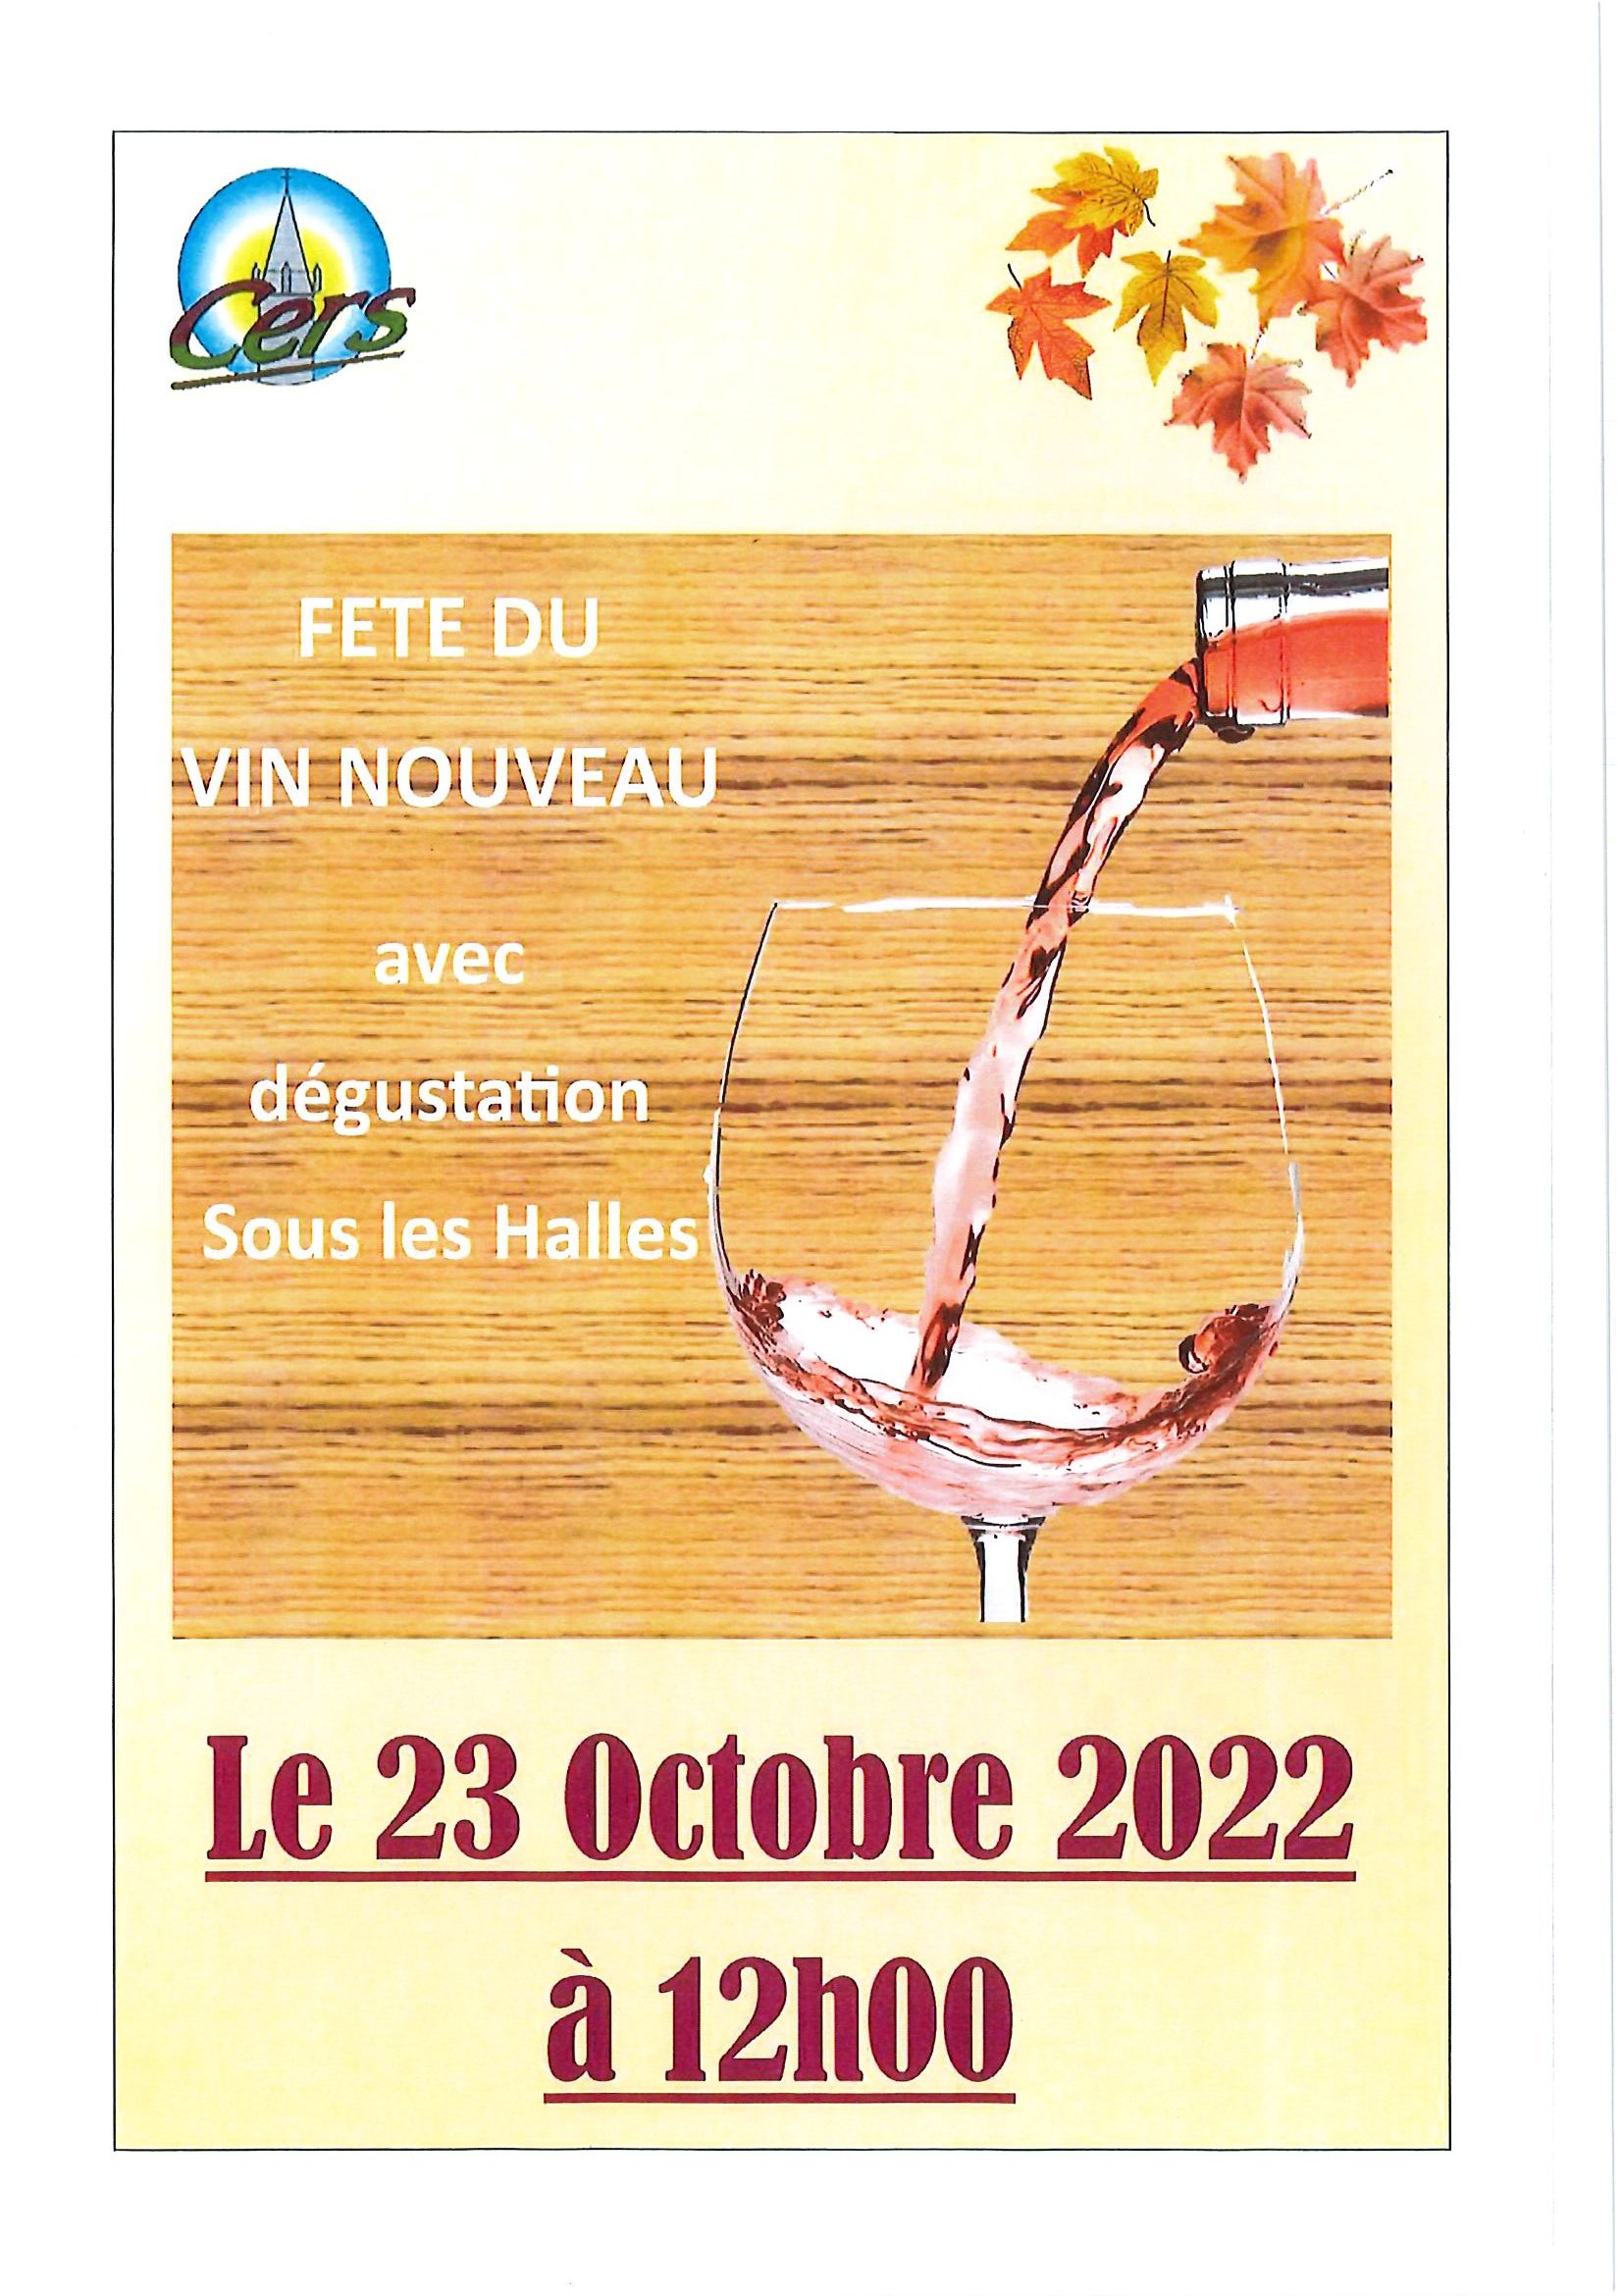 Lire la suite à propos de l’article Fête du vin nouveau : 23 octobre à 12h